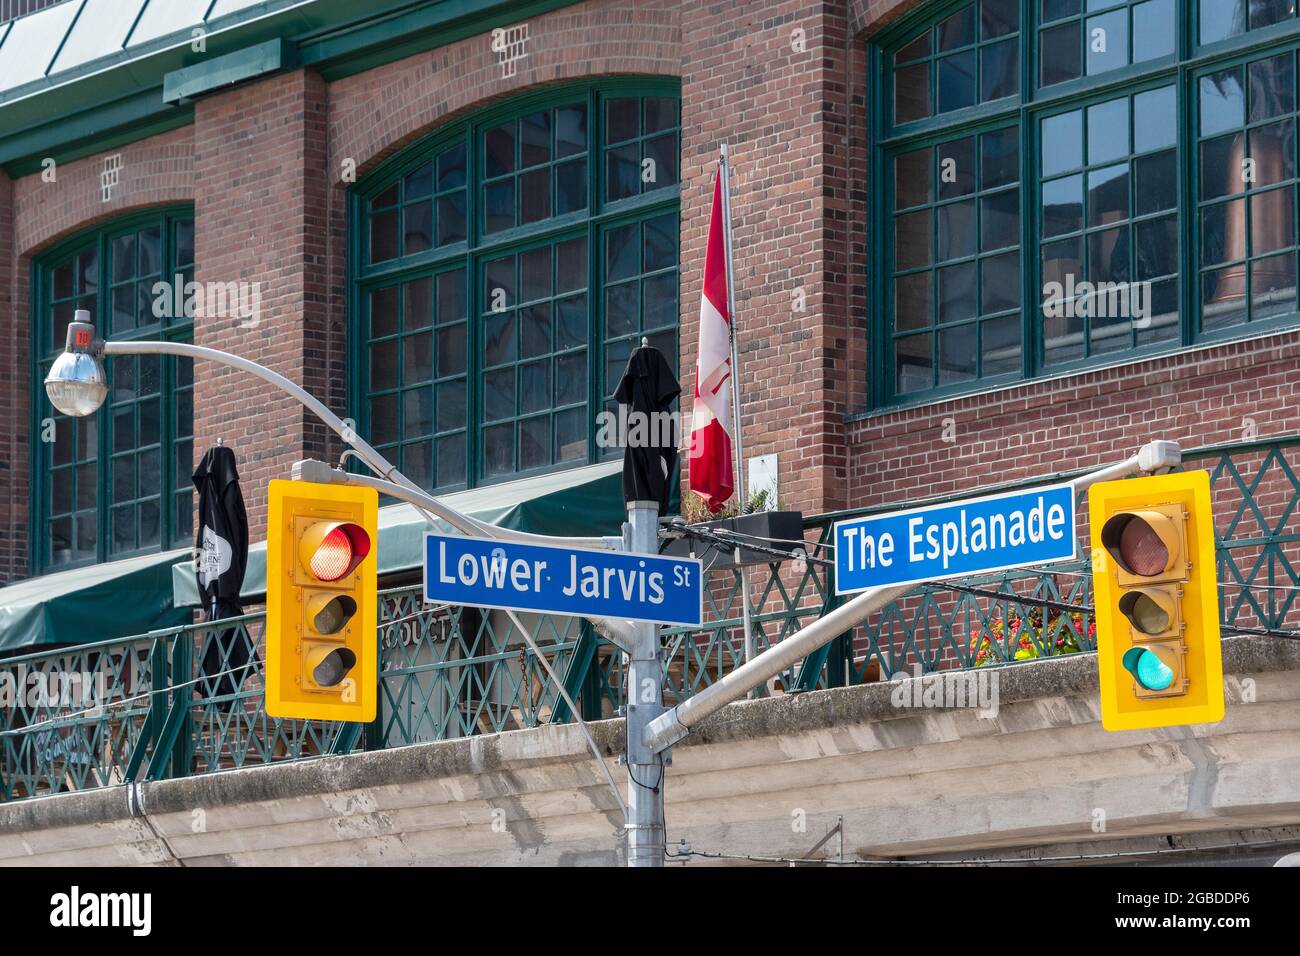 Indicazioni stradali all'incrocio tra Esplanade e Lower Jarvis Street nella città di Toronto, Canada. Il mercato di San Lorenzo è visto nel backgroun Foto Stock